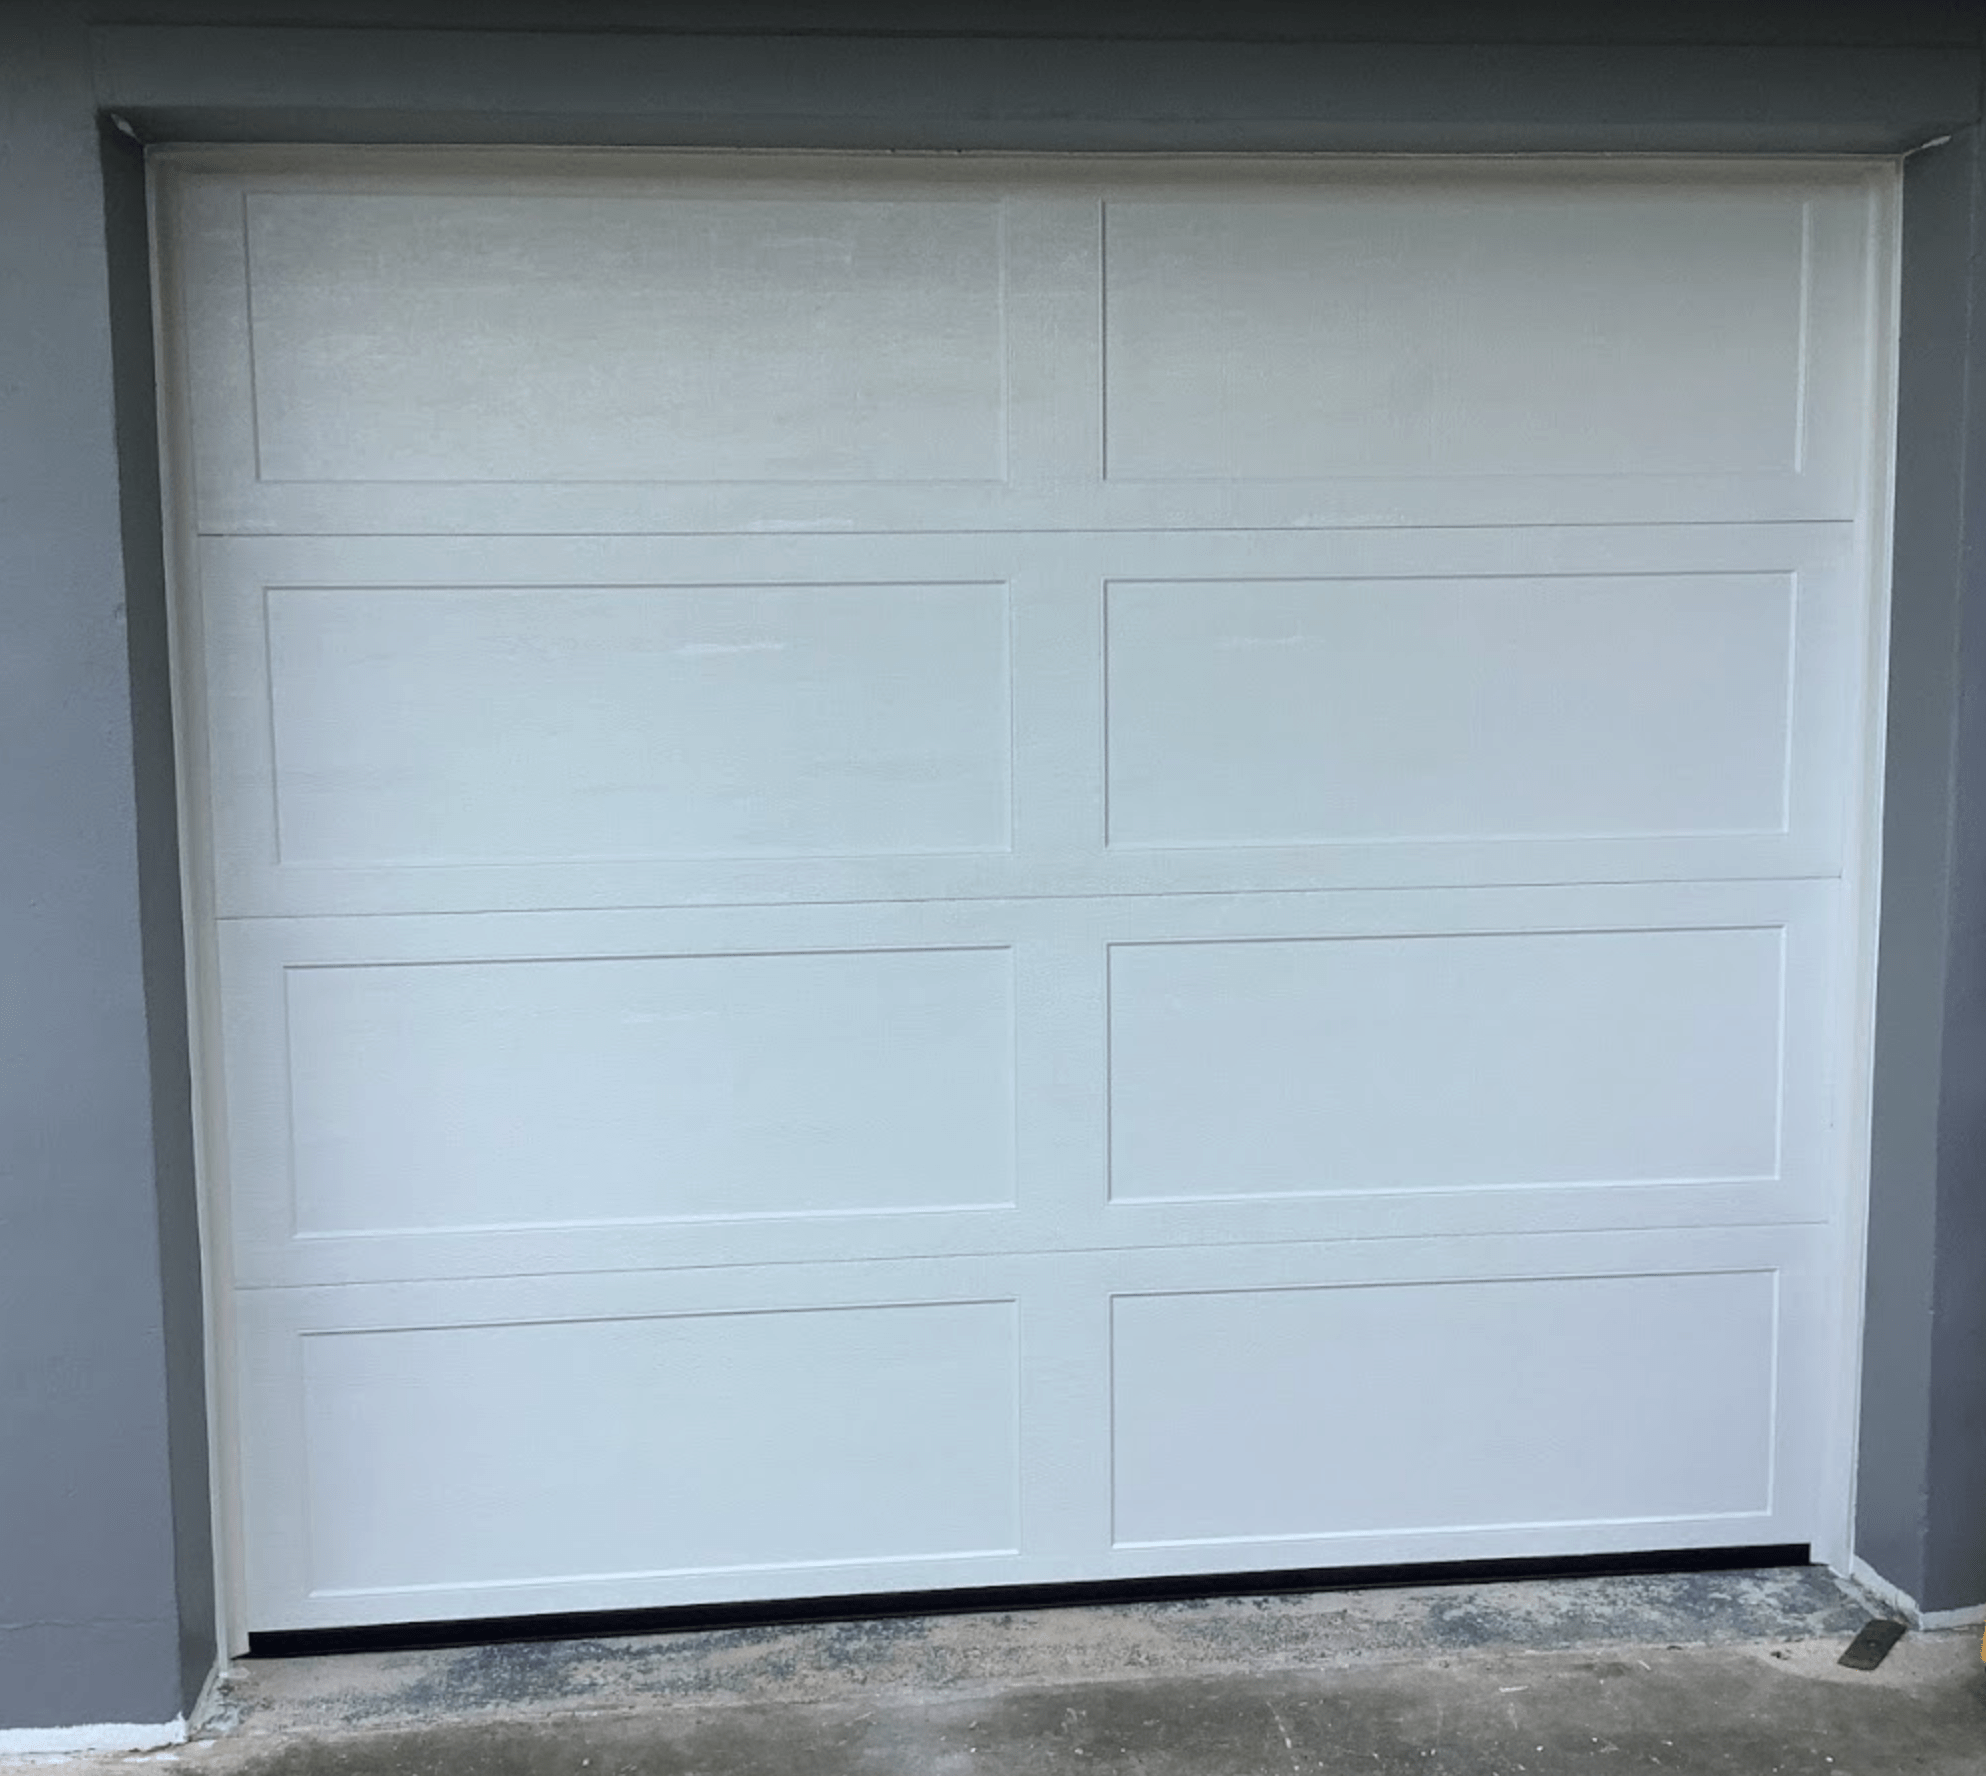 Recessed Long Panel Garage Door